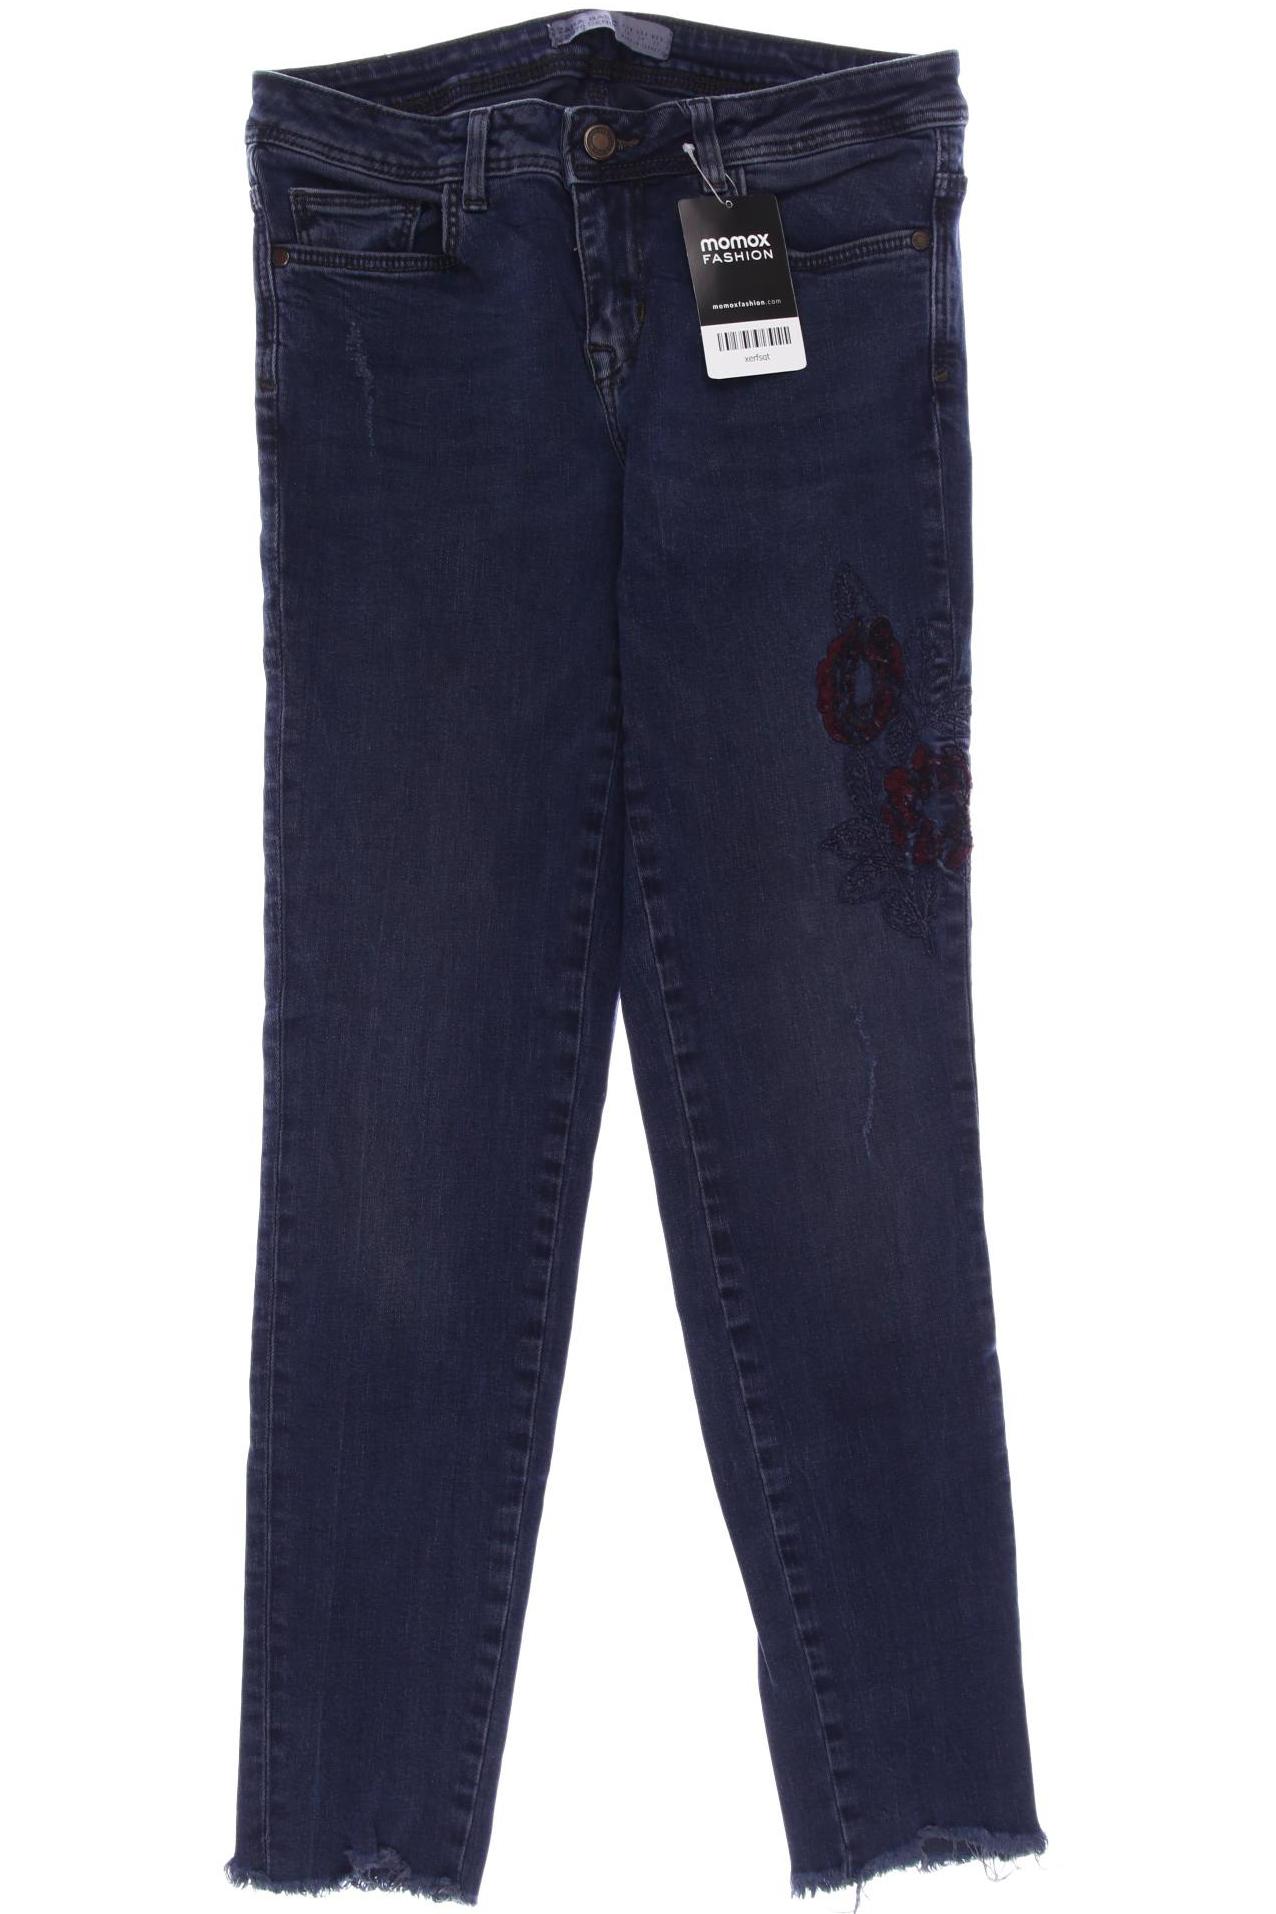 Zara Damen Jeans, marineblau, Gr. 36 von ZARA